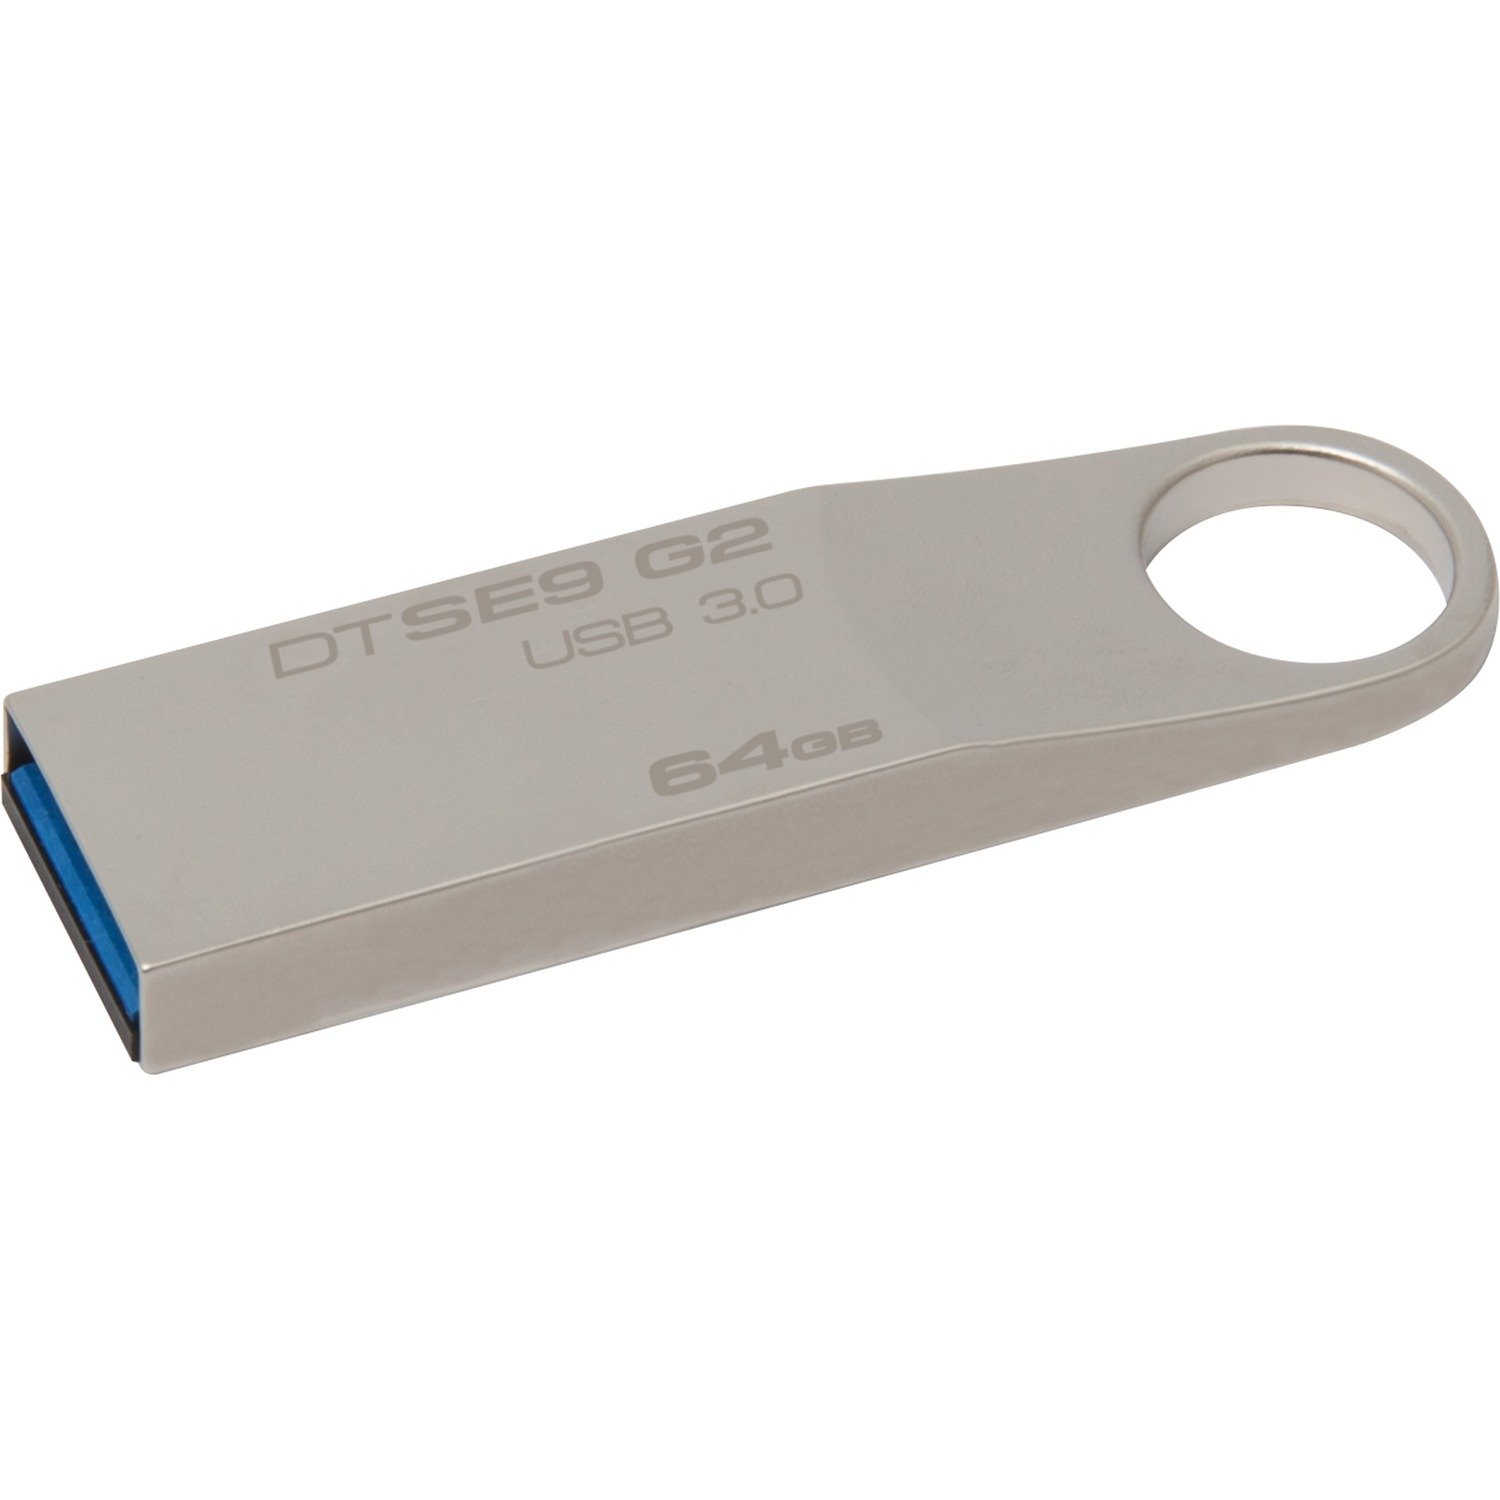 Kingston DataTraveler SE9 G2 USB 3.0